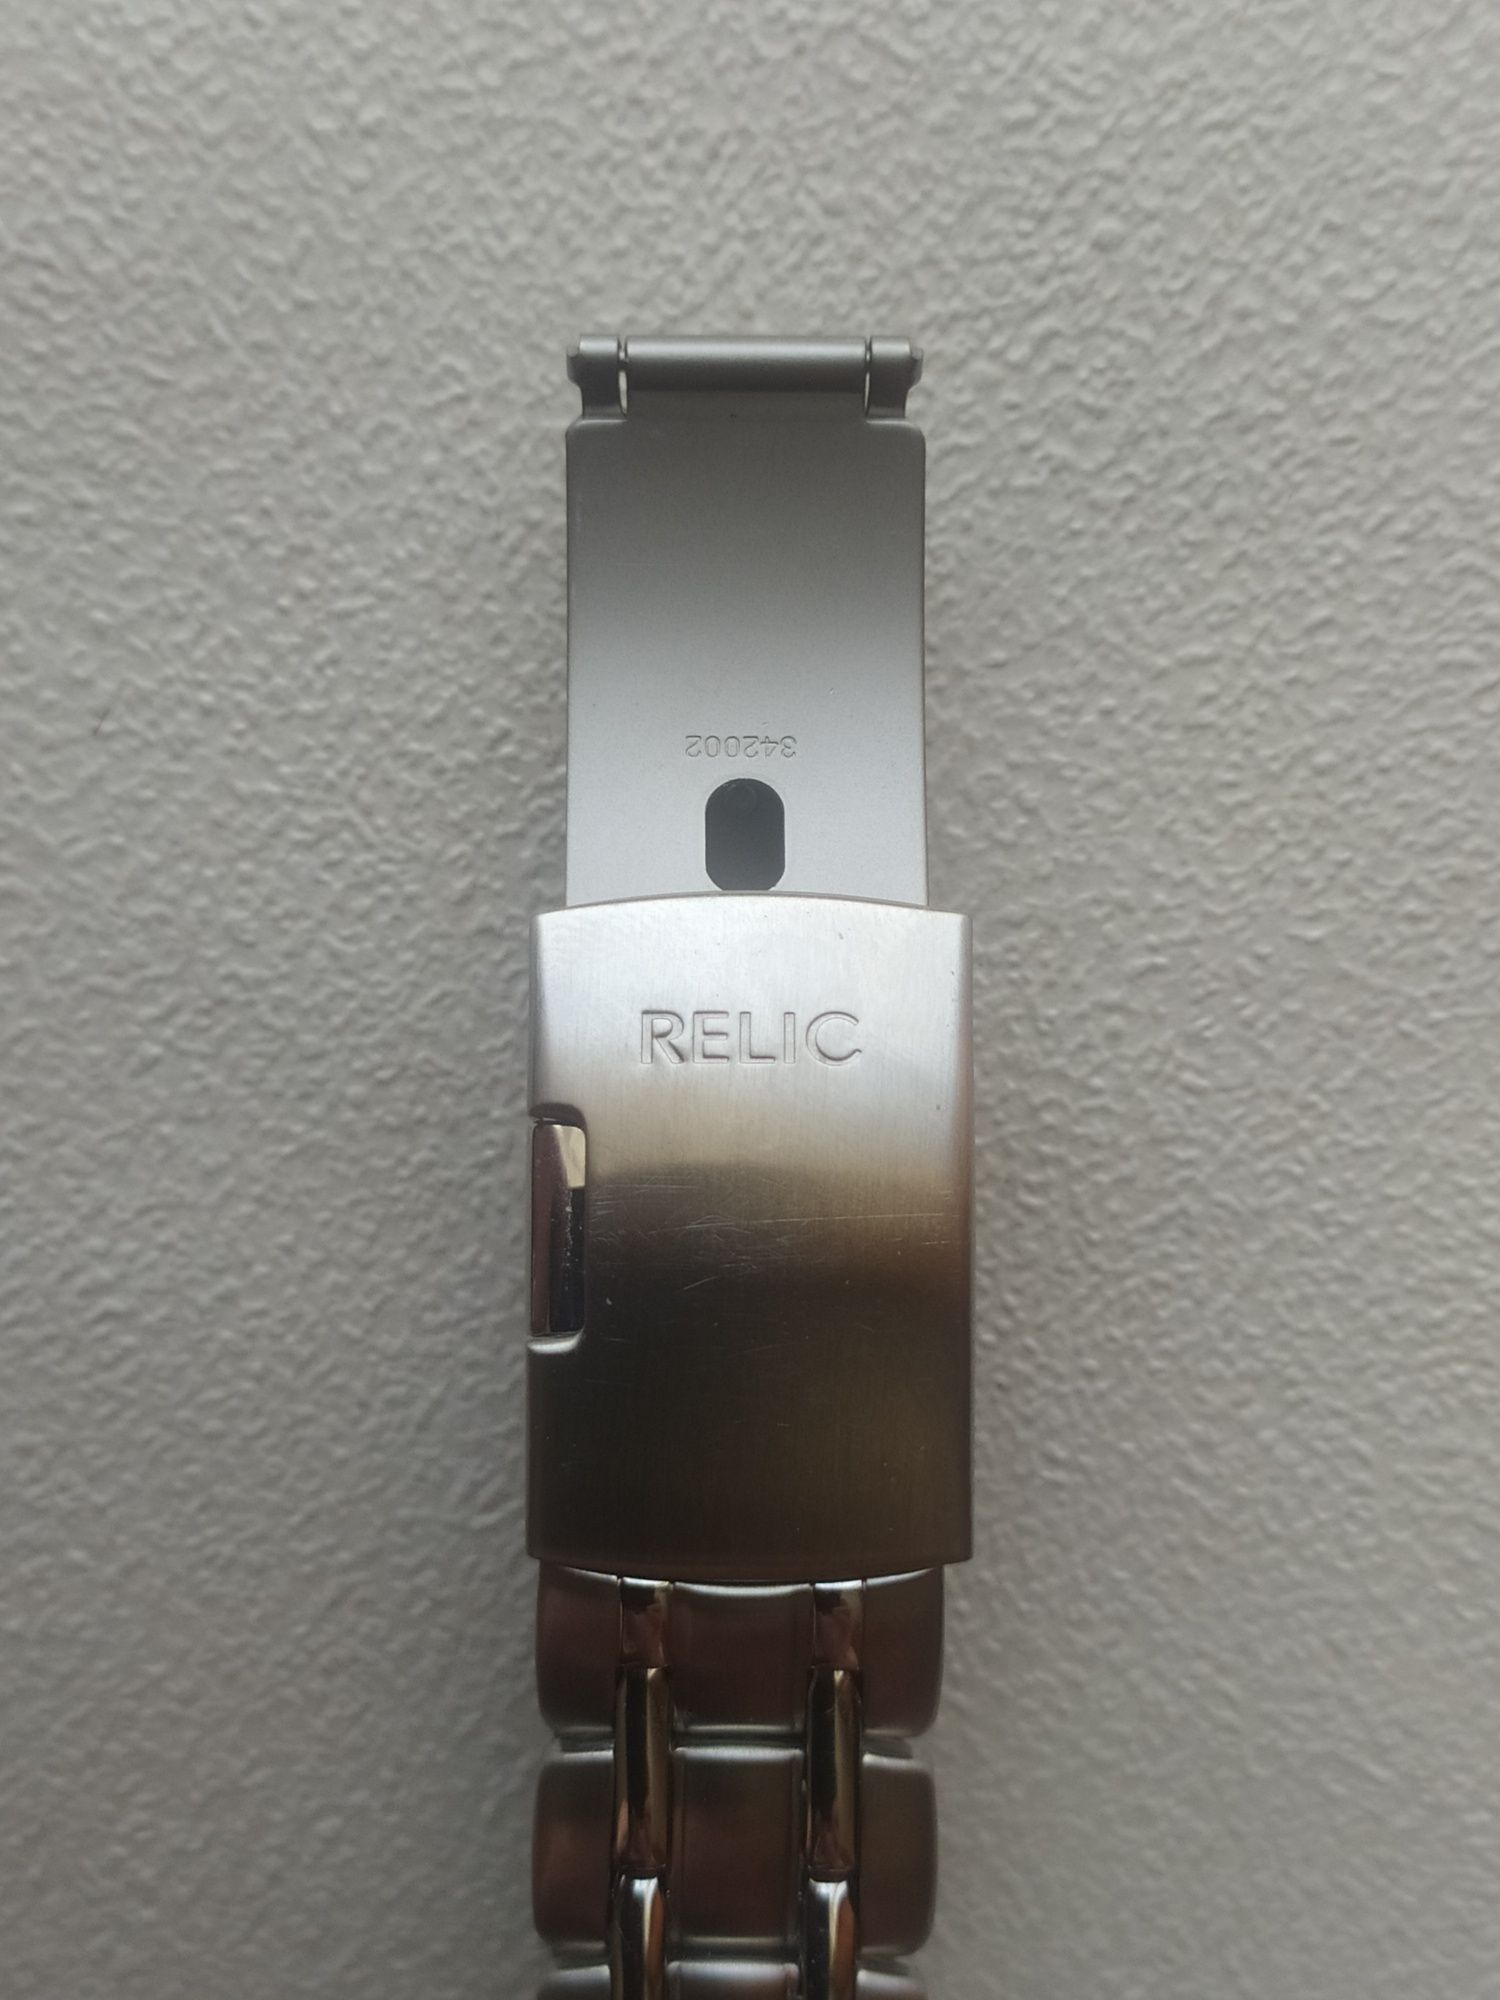 Мужские часы бренда RELIC с календарем.